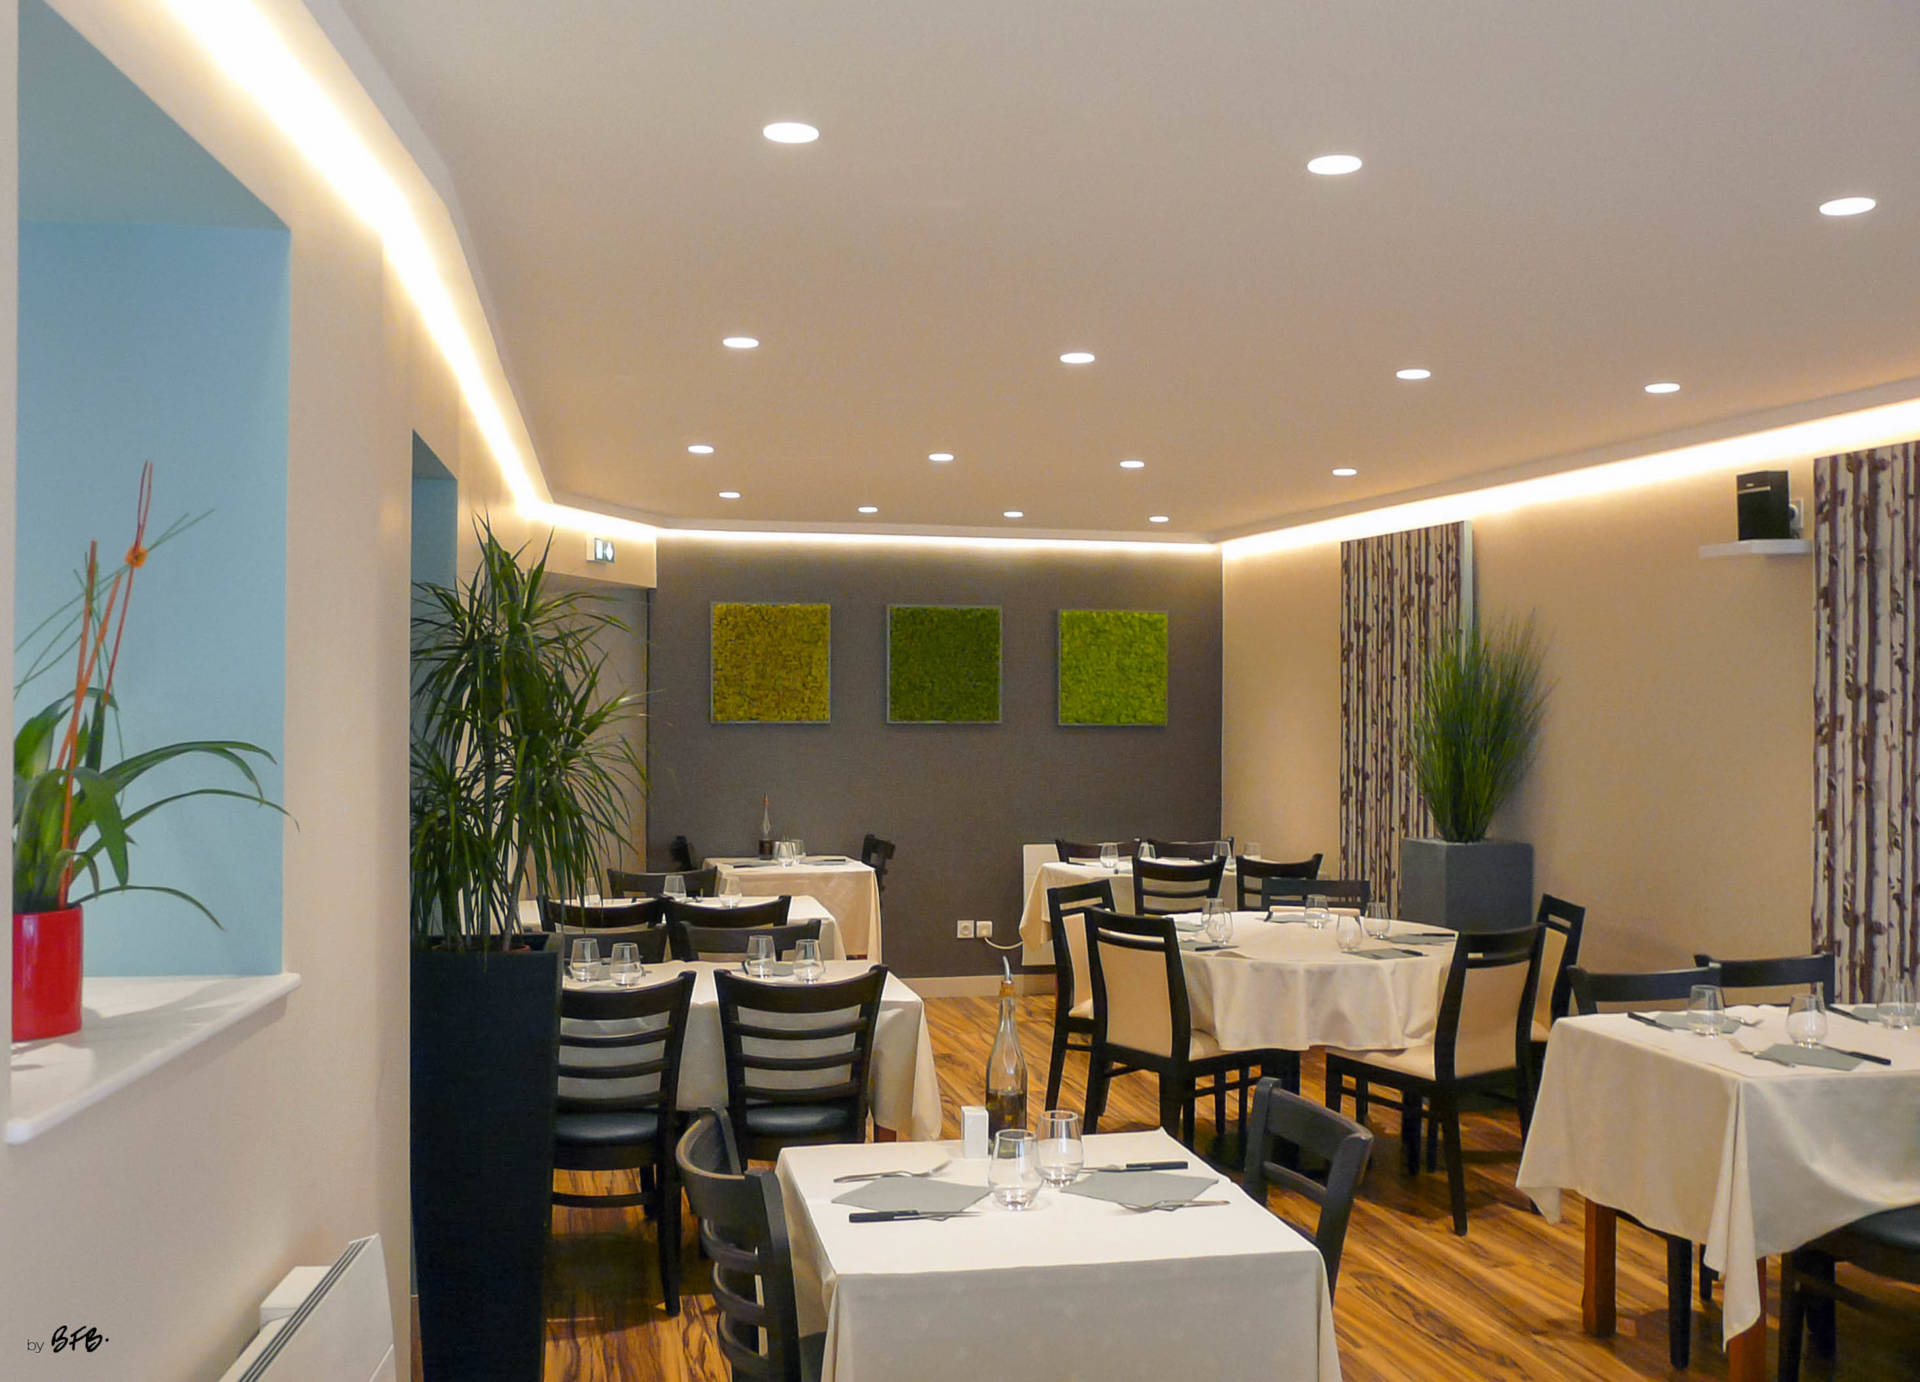 Relooking décoratif, création ambiance, Restaurant pizzeria, Rostrenen, Bretagne by Agence BFB Lorient, touche de bleu, ambiance végétale